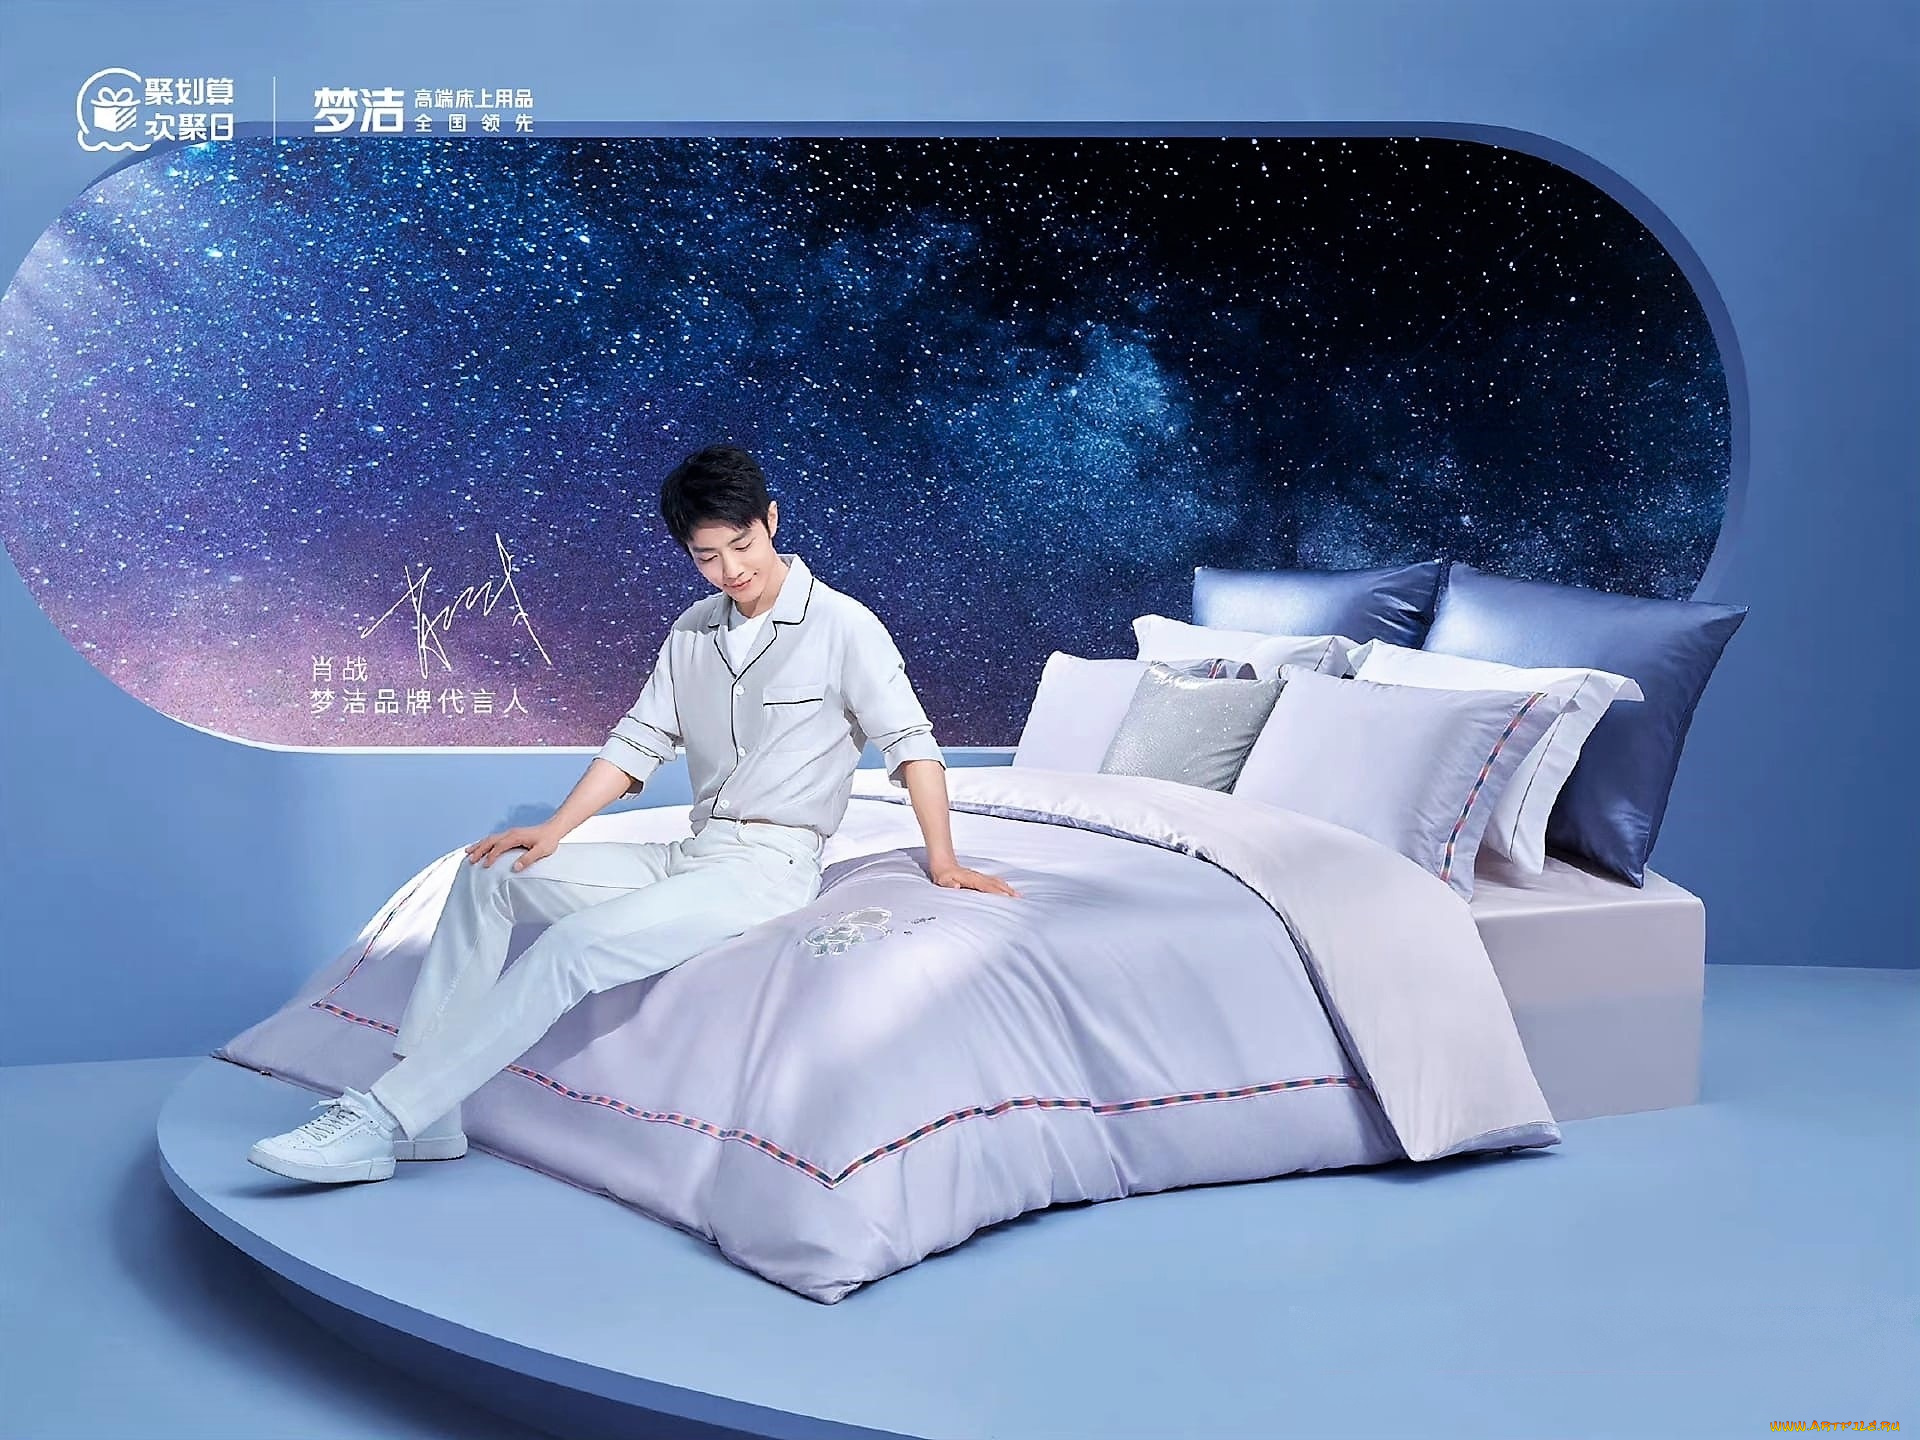 мужчины, xiao, zhan, актер, кровать, космос